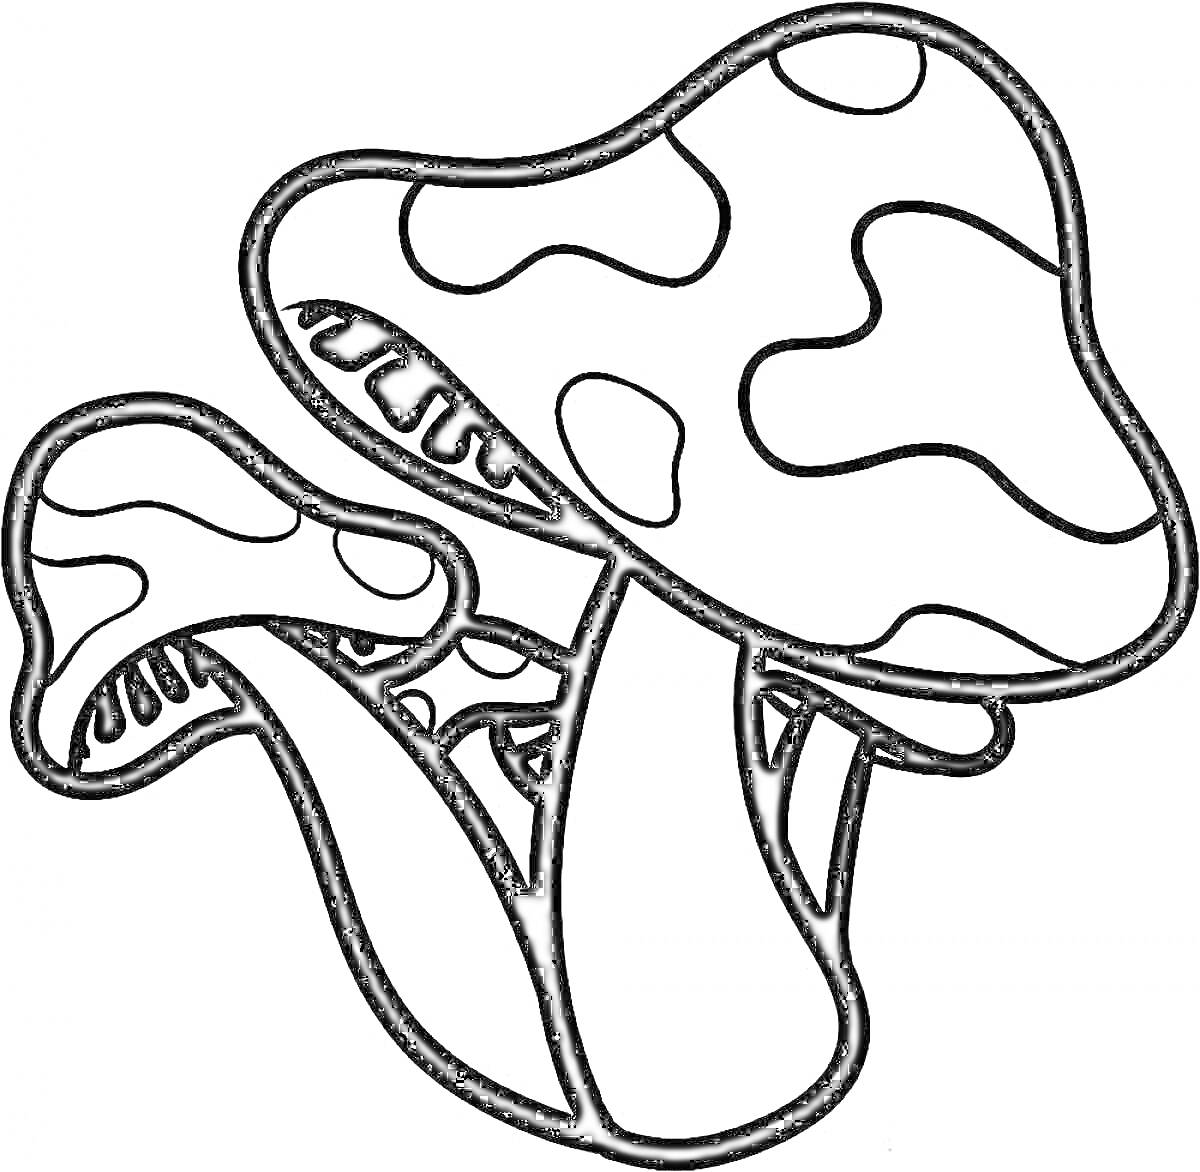 Раскраска Раскраска с тремя грибами с узорчатыми шляпками